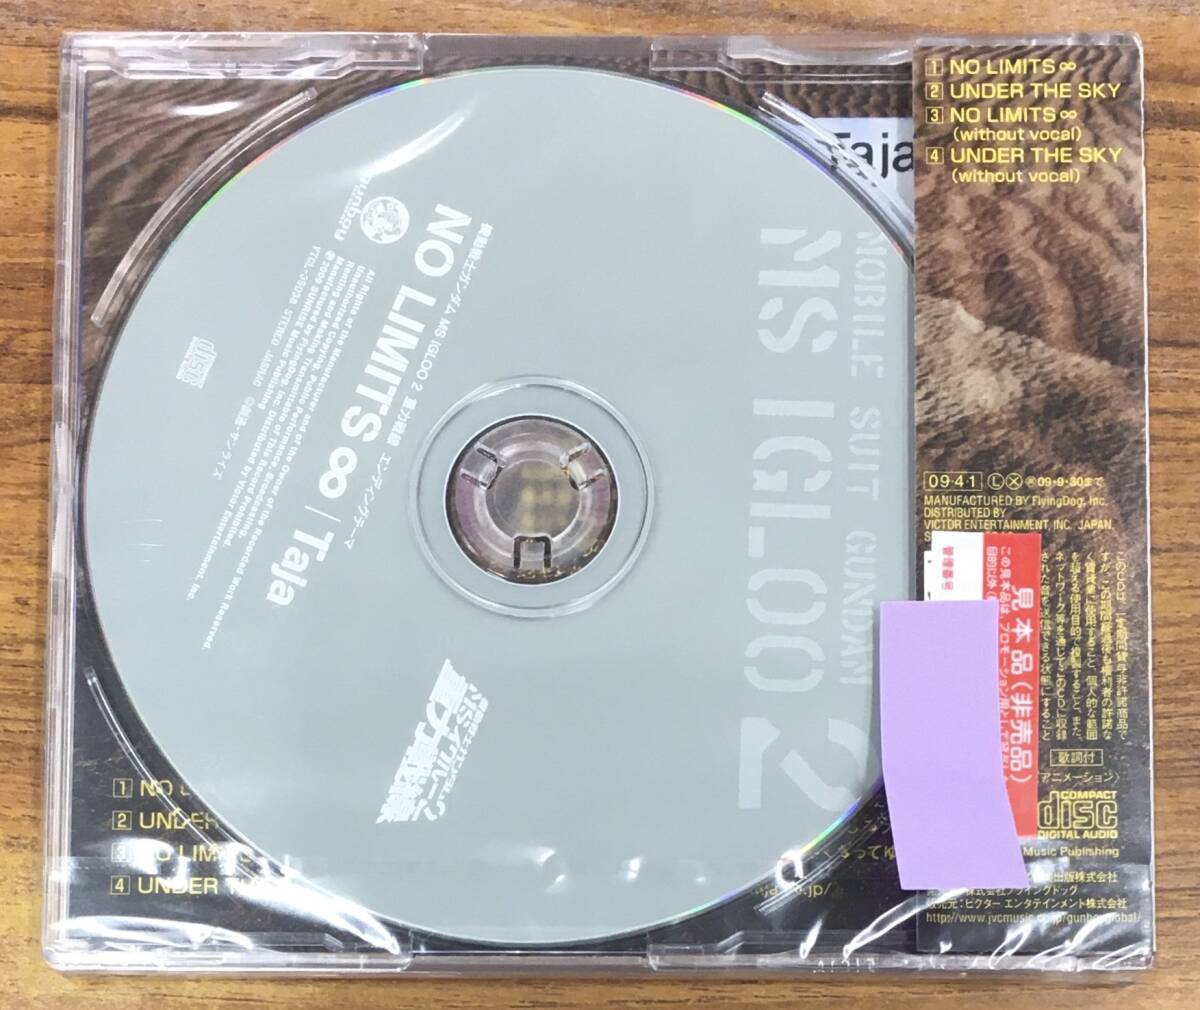 Taja - NO LIMITS- нераспечатанный CD образец товар VTCL35038...h-2642 Mobile Suit Gundam MS IGLOO2 -слойный сила битва линия no. 3 рассказ otesa, металлический. гроза!